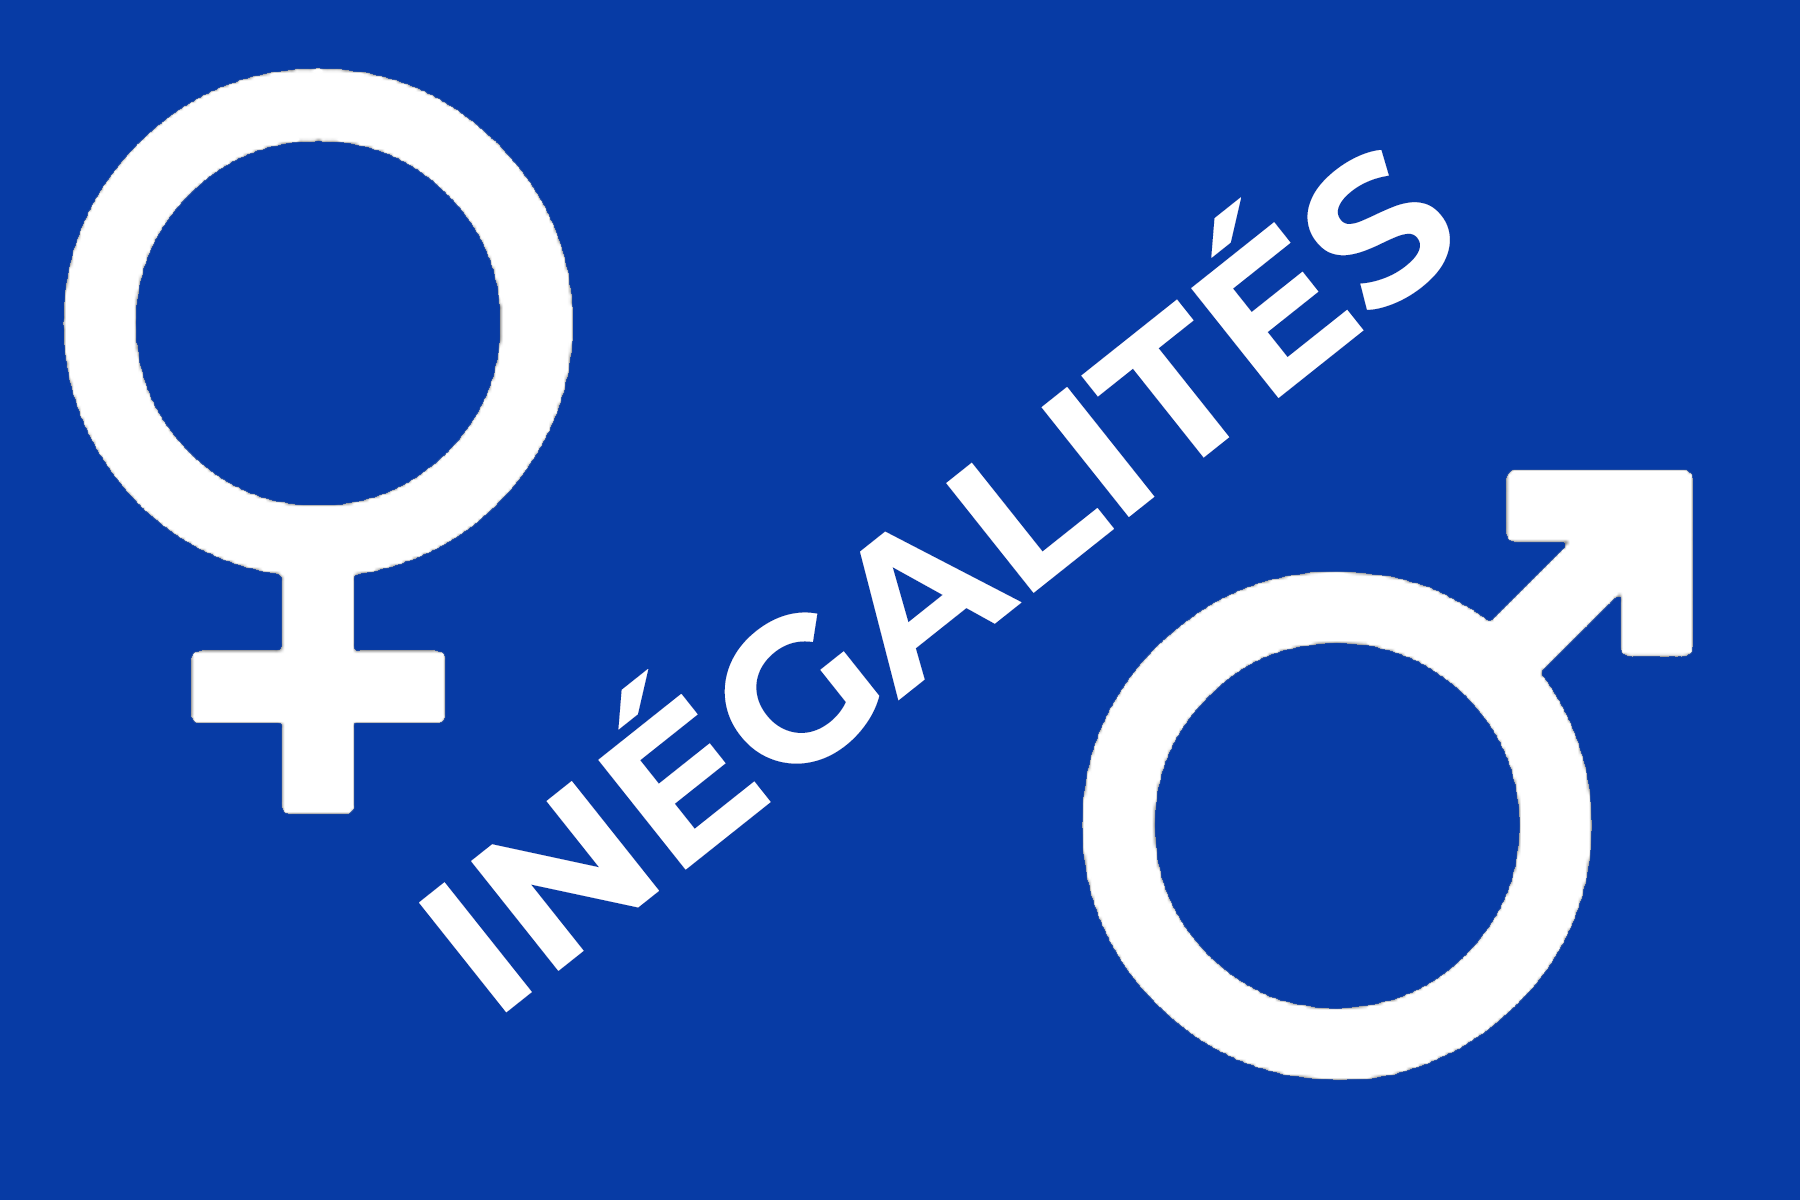 inégalités femmes hommes